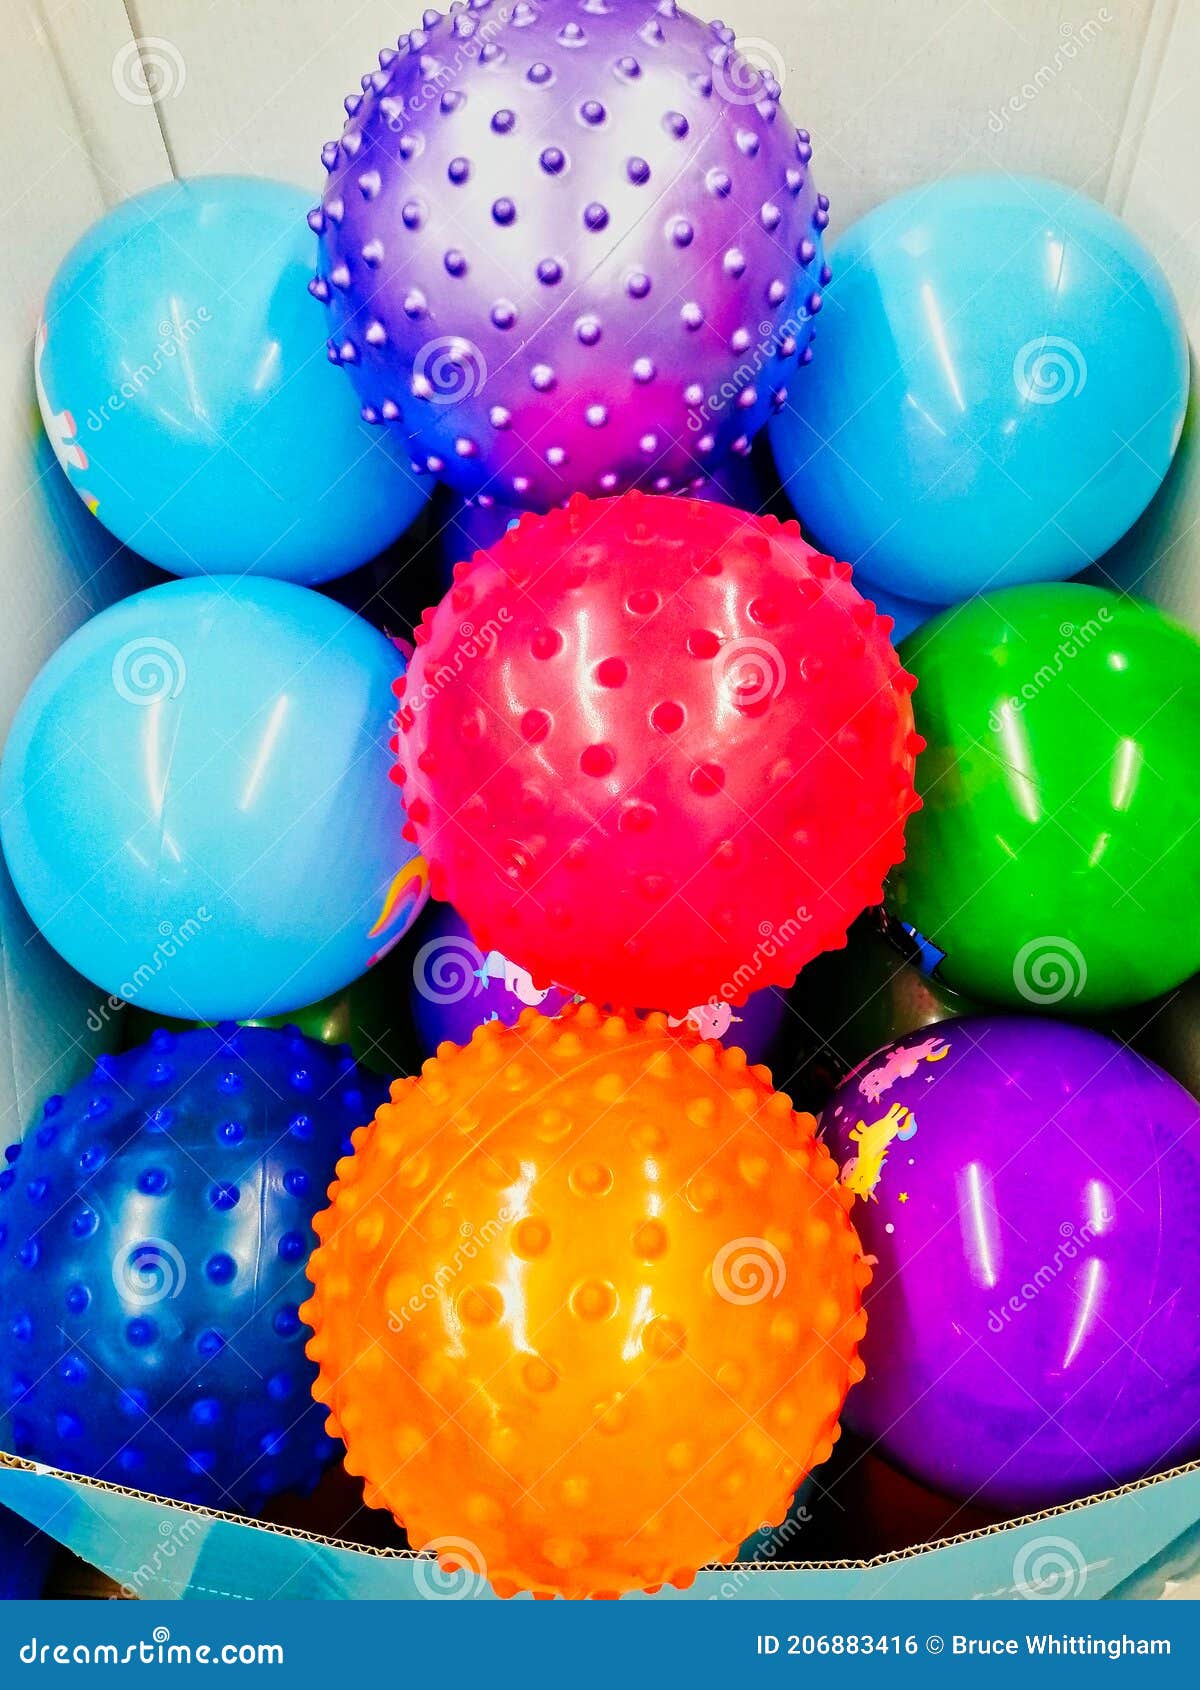 Speciaal Grappig Afleiden Kleurrijke Plastickinderen Spelen Ballen Stock Foto - Image of winkel,  knobbeltjes: 206883416